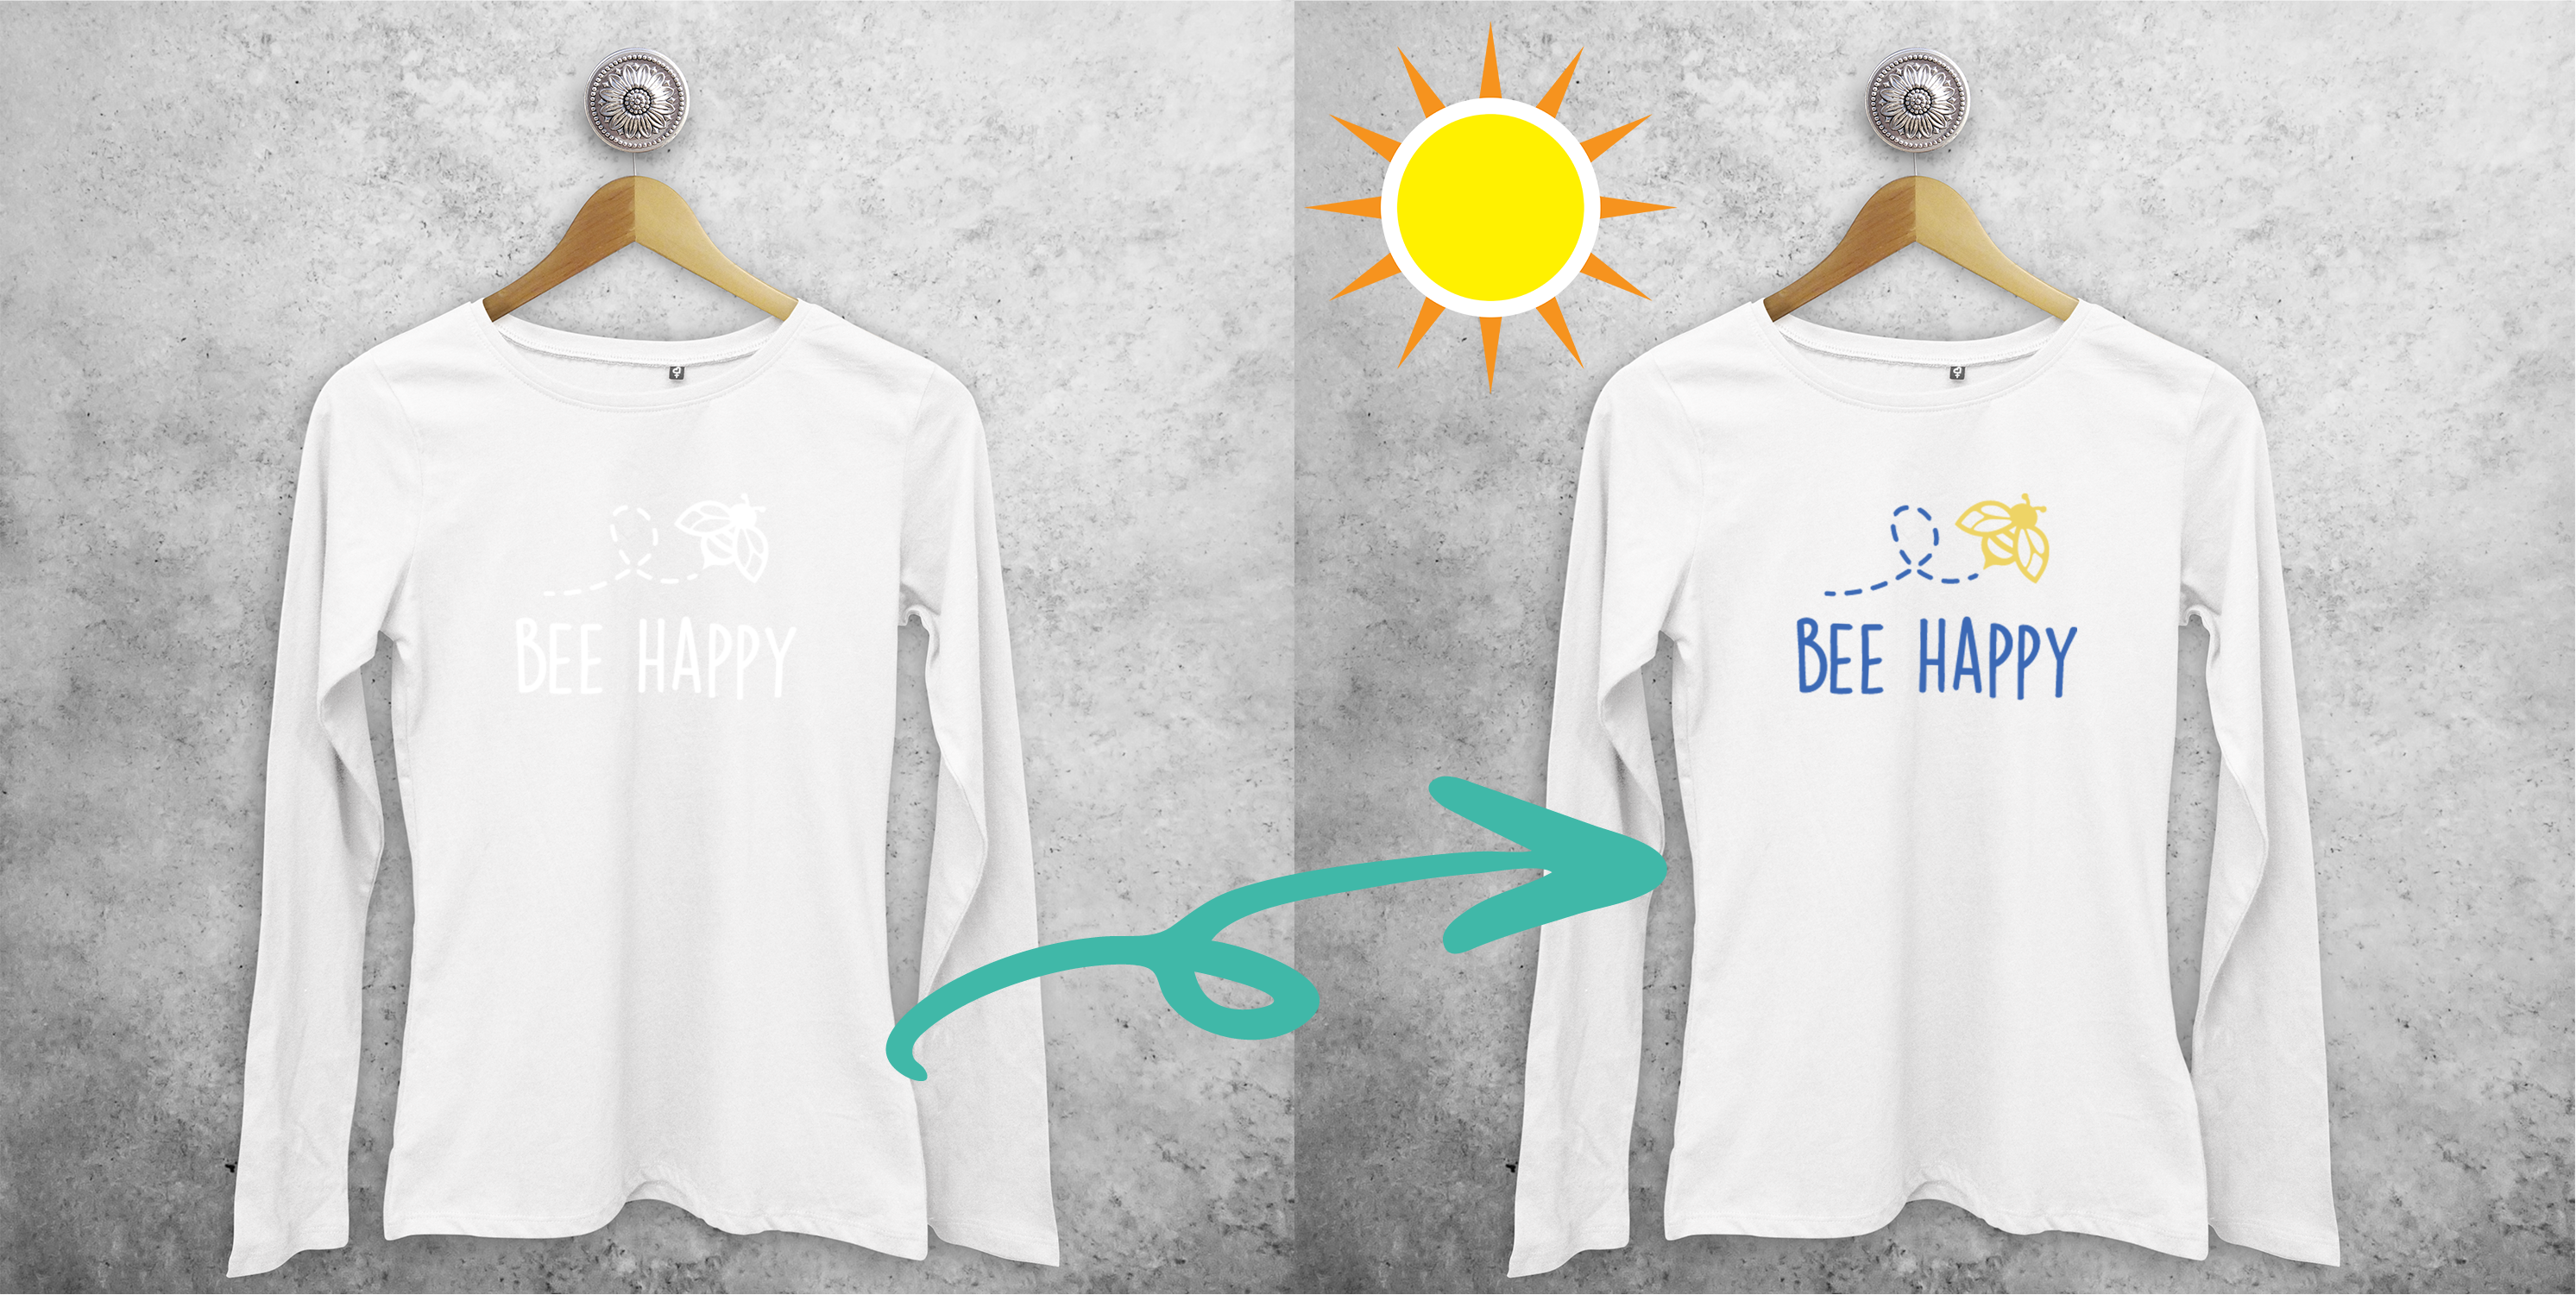 Bee happy' magisch volwassene shirt met lange mouwen